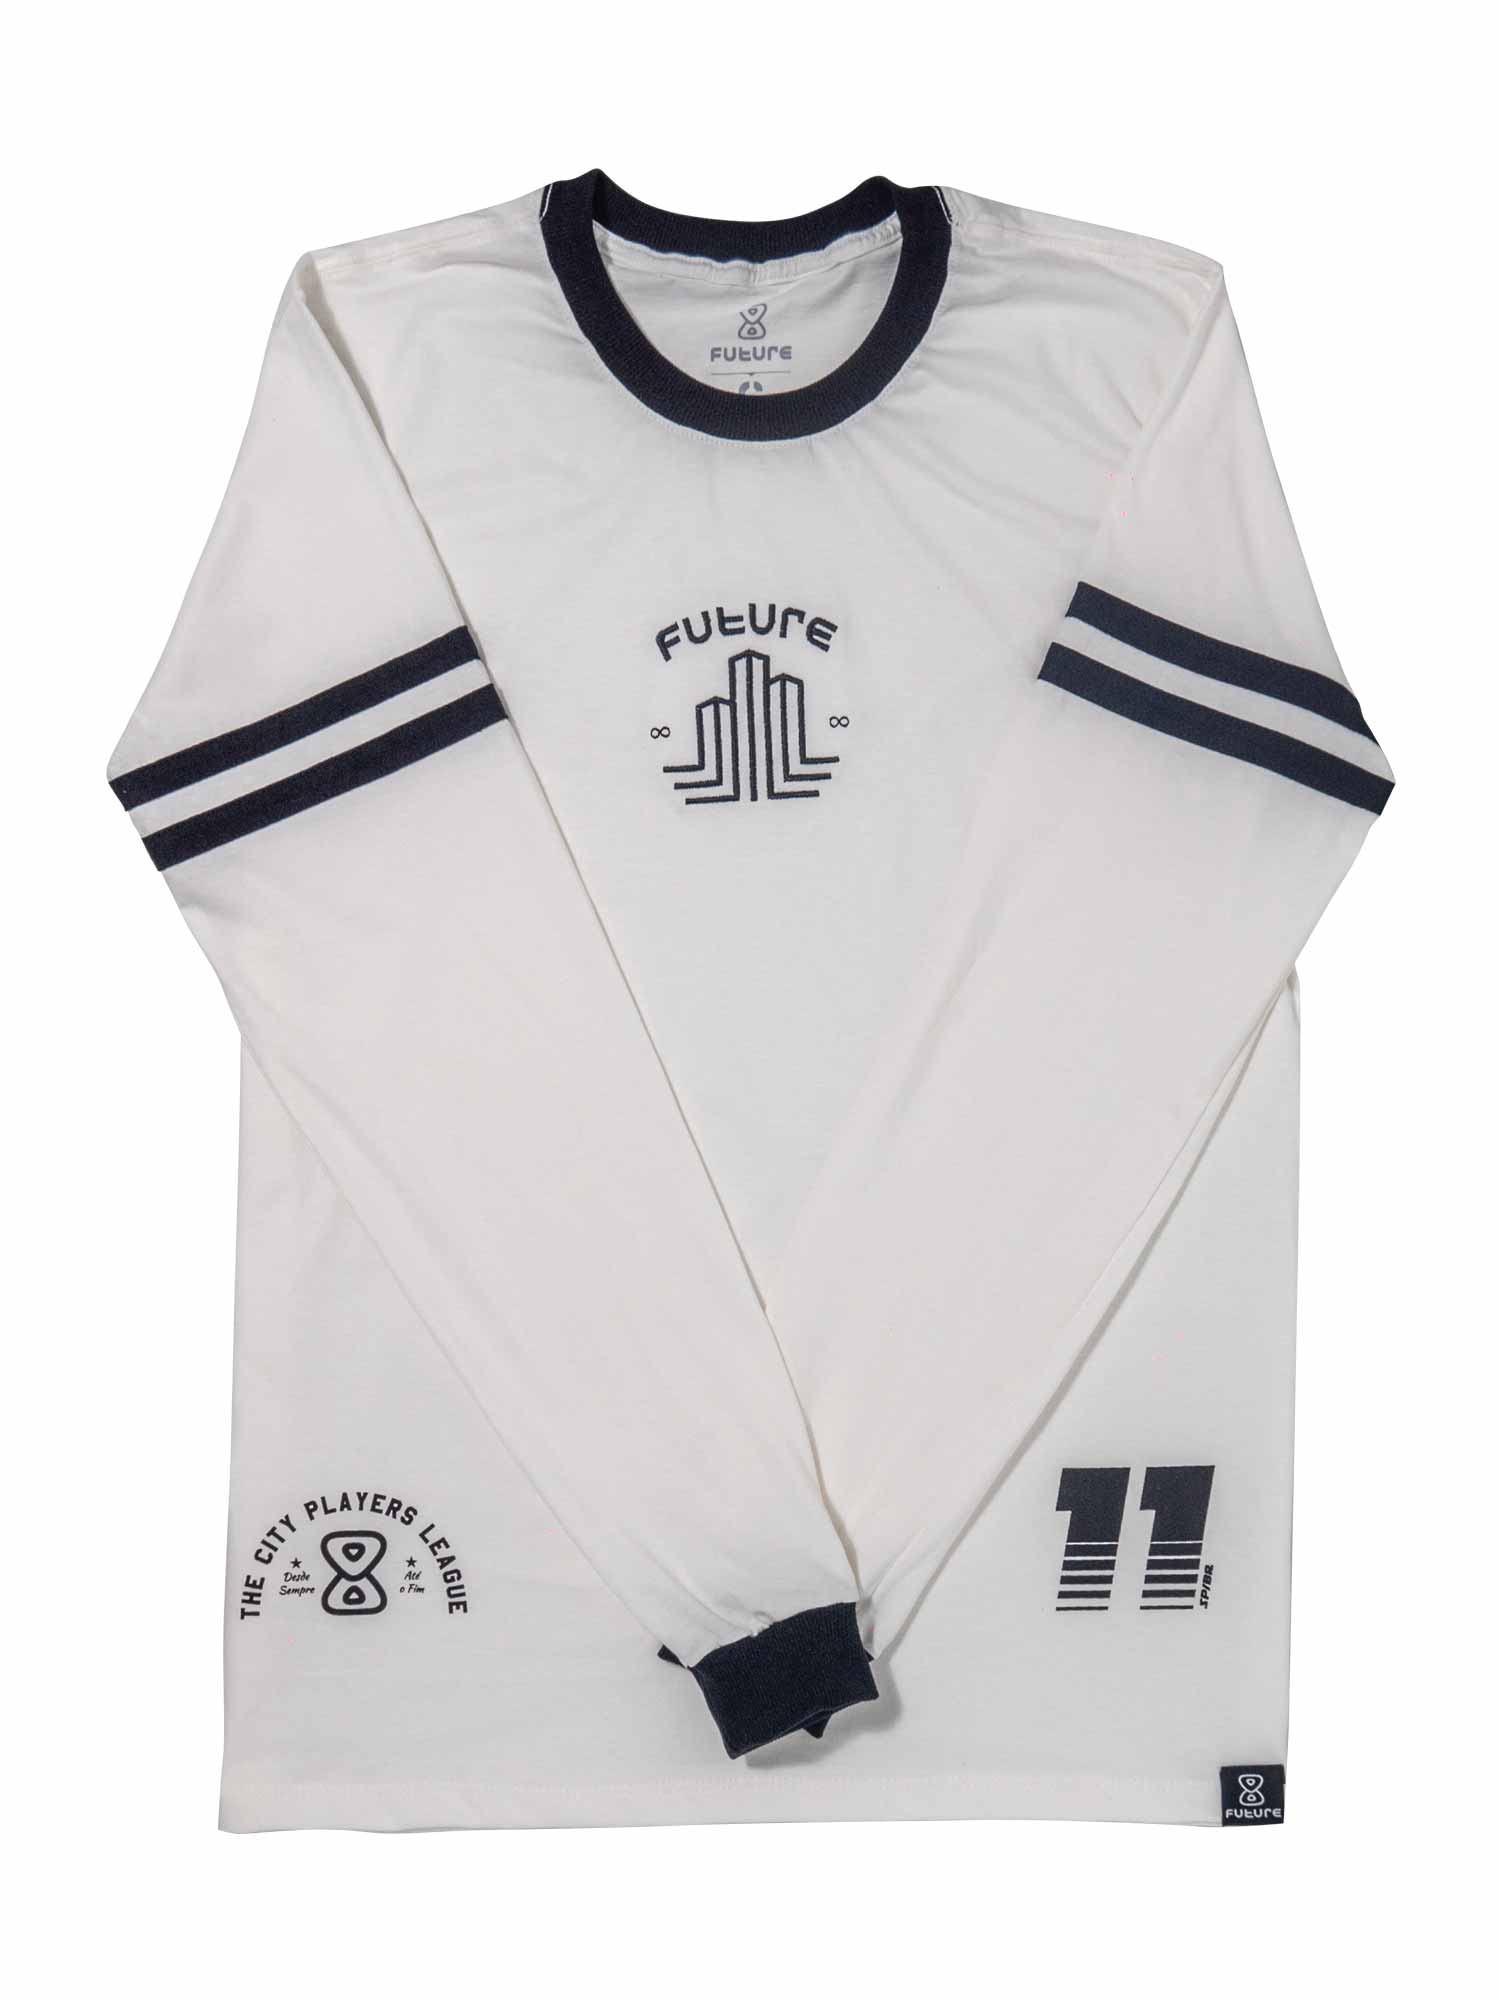    Camiseta-Future-City-Players-Off-White-Frente